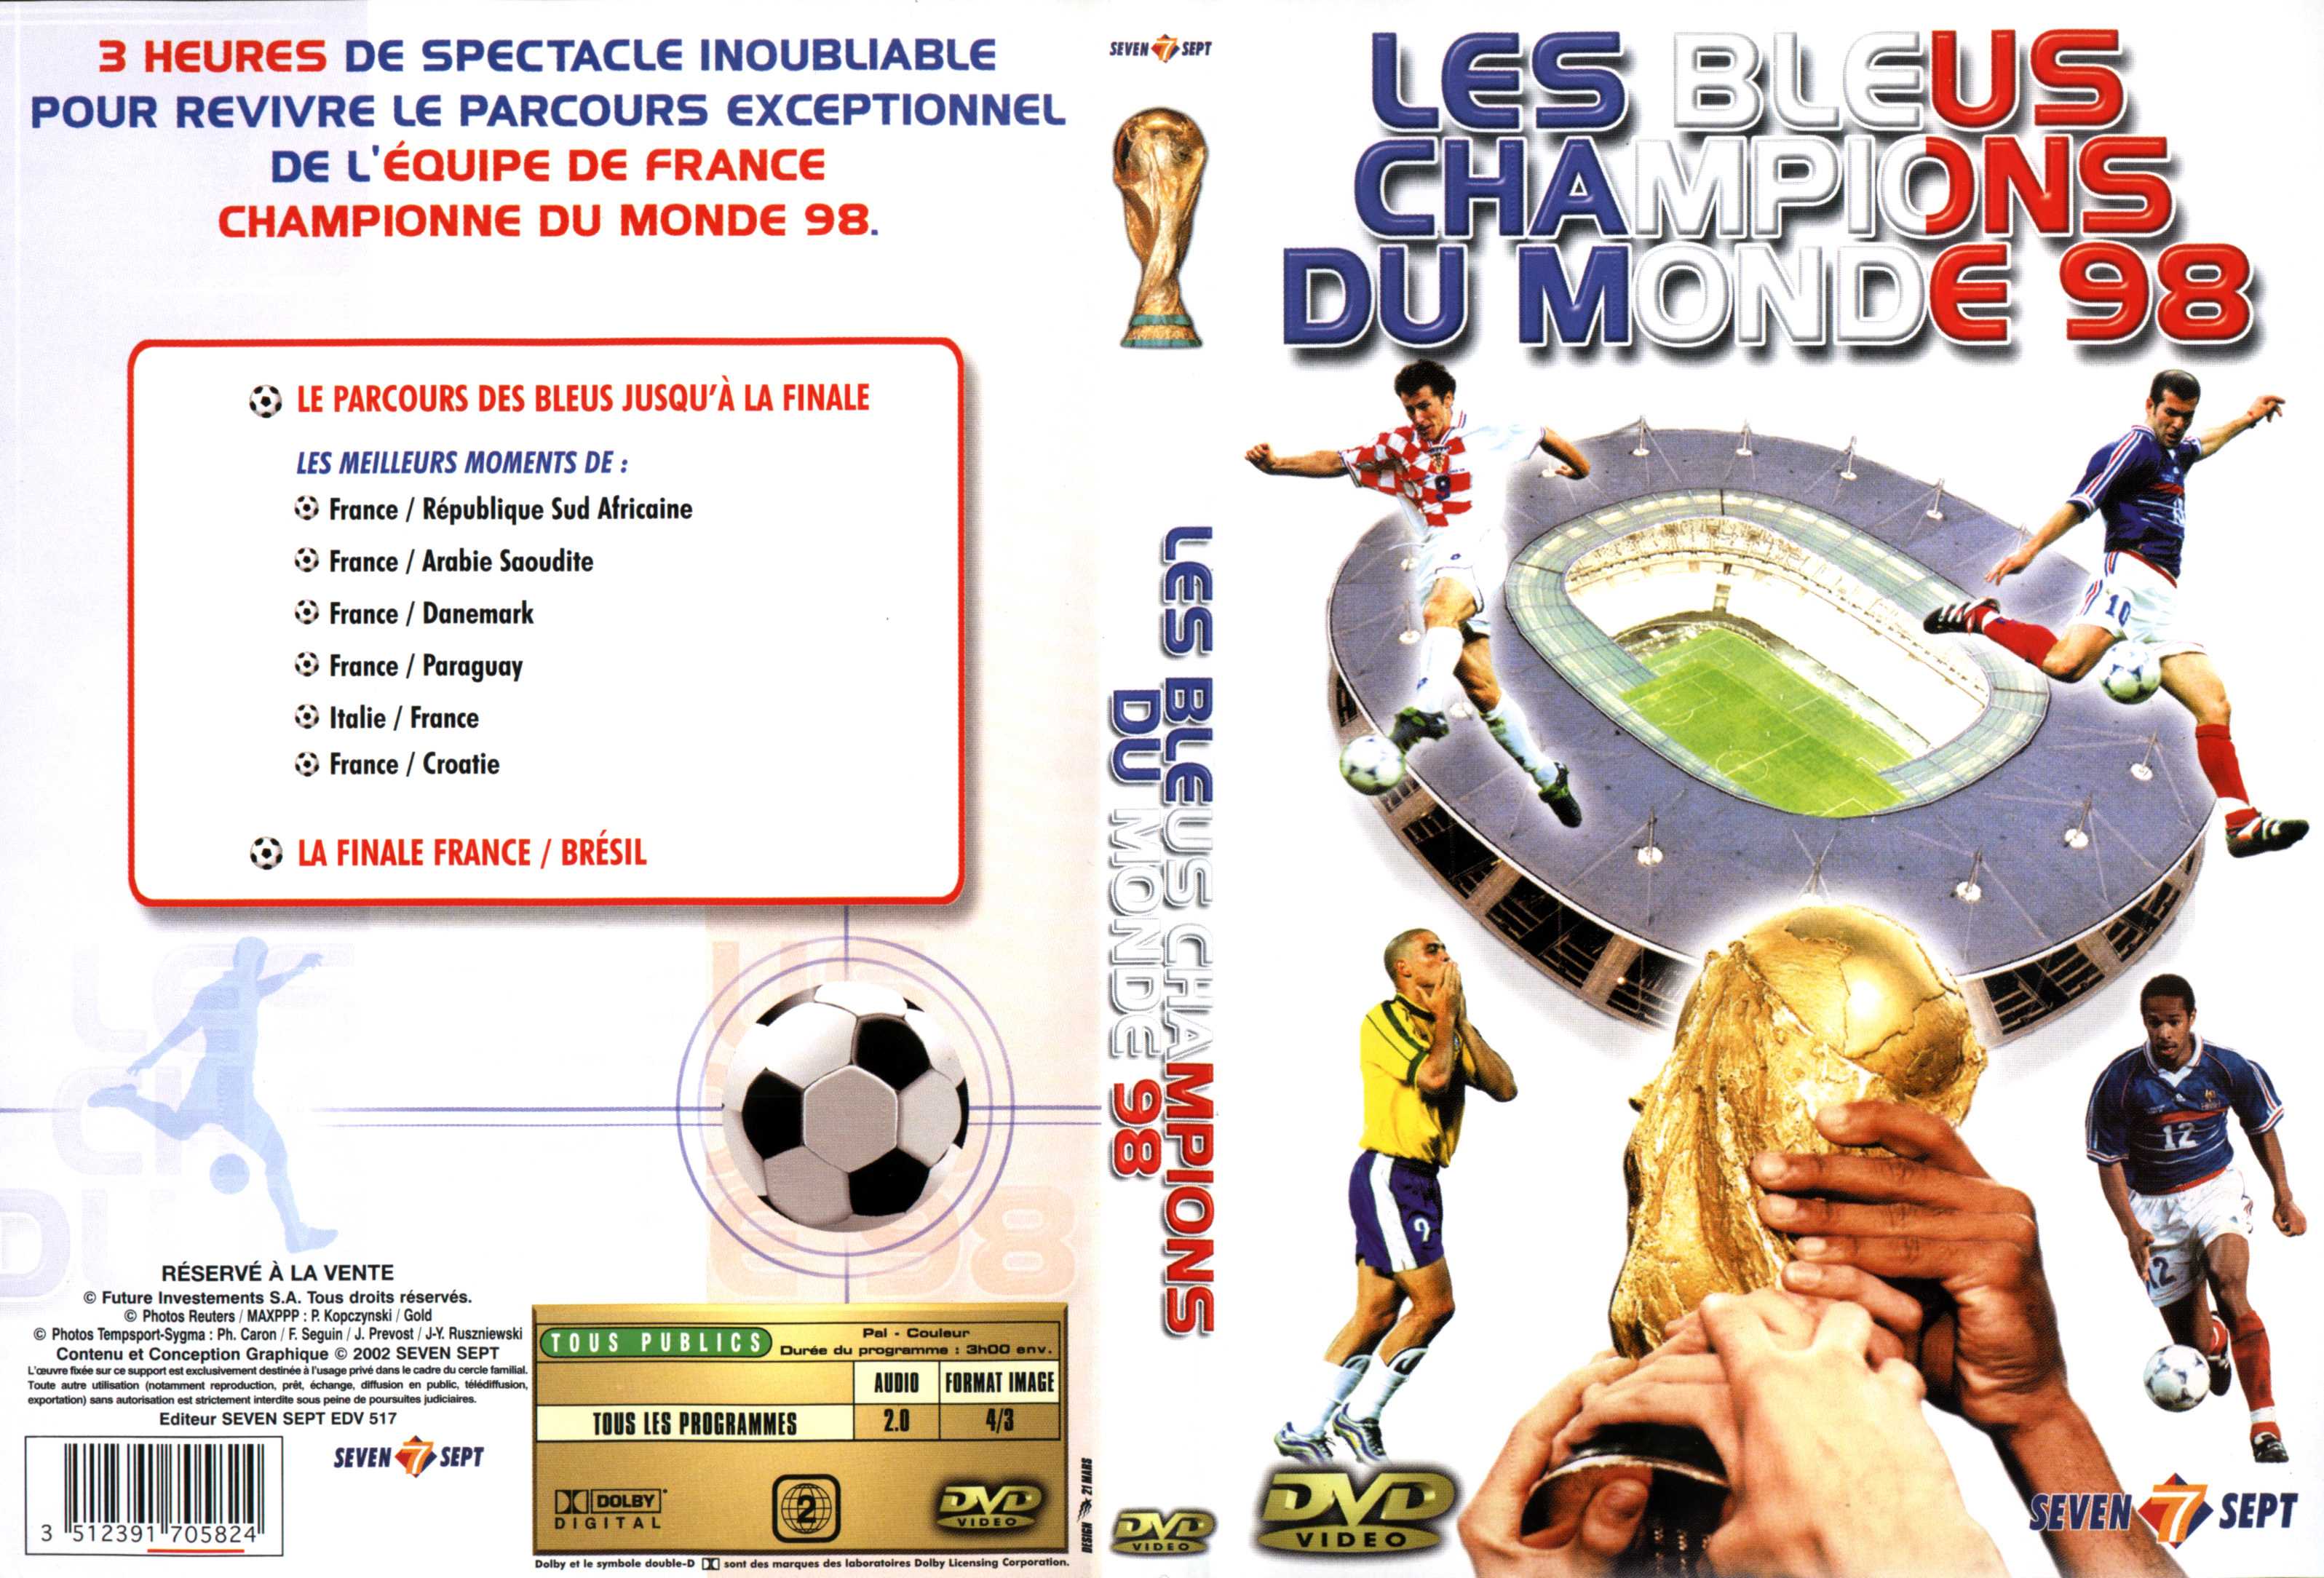 Jaquette DVD Les bleus champions du monde 98